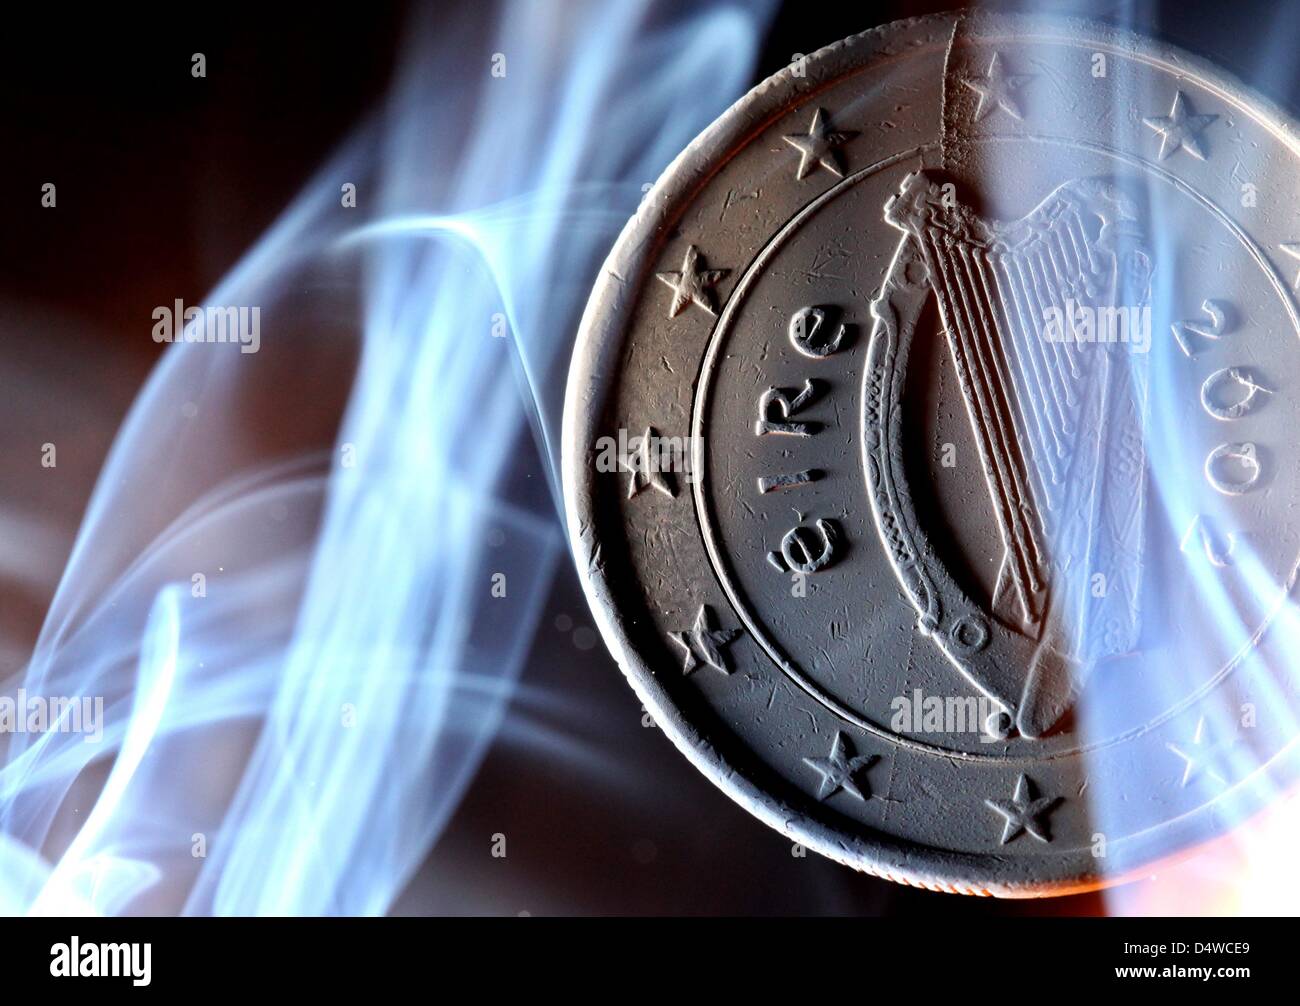 Un irlandés una moneda de euro destacados en Duesseldorf, Alemania, el 22 de noviembre de 2010. Irlanda es el primer país en solicitar oficialmente un rescate financiero de la Unión Europea (UE) y el Fondo Monetario Internacional (FMI). El Ministro de Hacienda, Lenihan confirmó que la cantidad de dinero que se pide en el rescate equivalía a "decenas de miles de millones de euros, pero negó que sería como Foto de stock